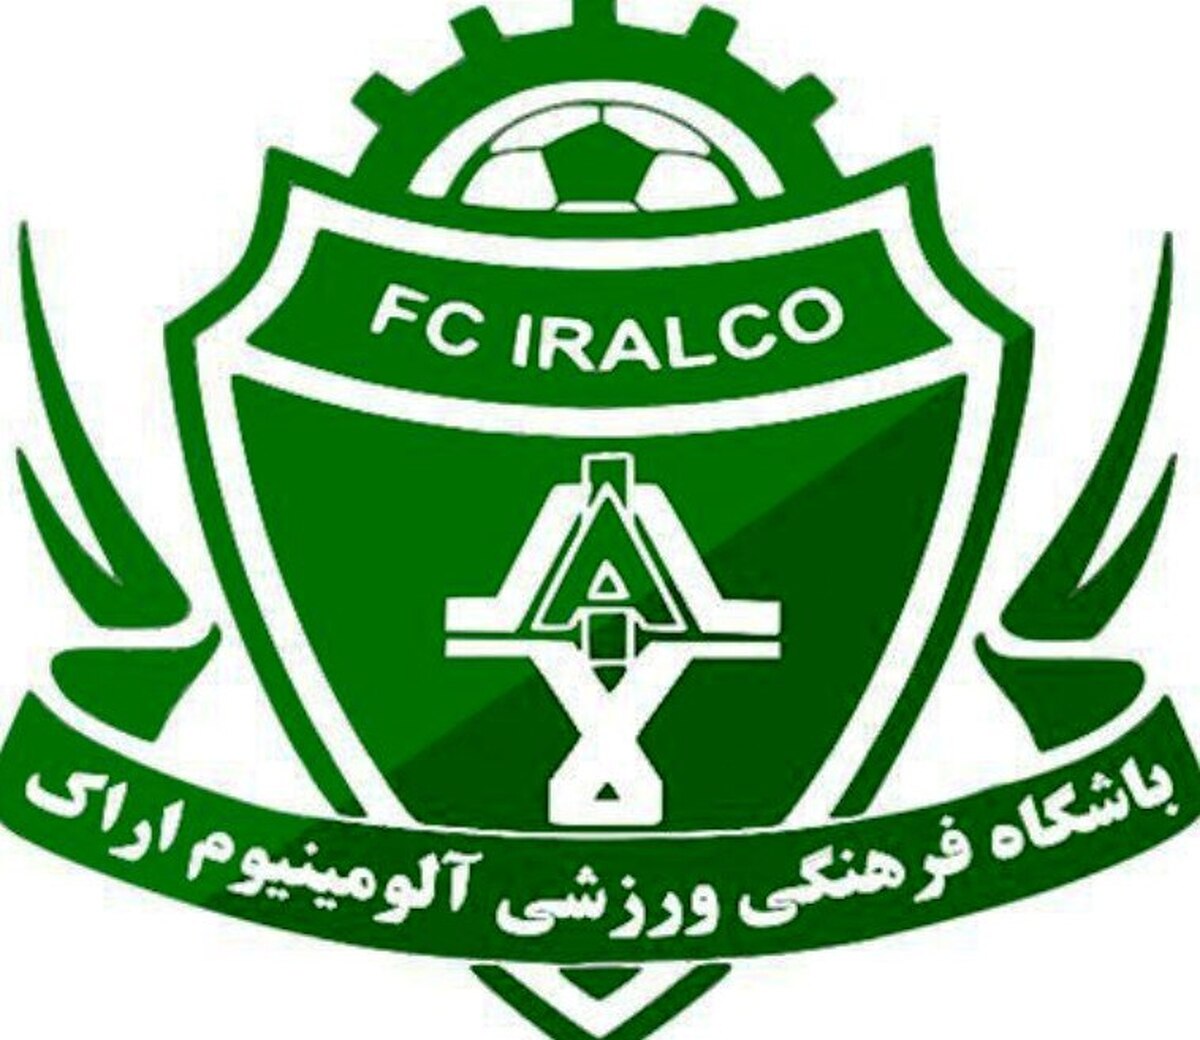 واکنش باشگاه آلومینیوم به خبر نقل و انتقالات: دلالان می خواهند آرامش خاطر ما را بگیرند